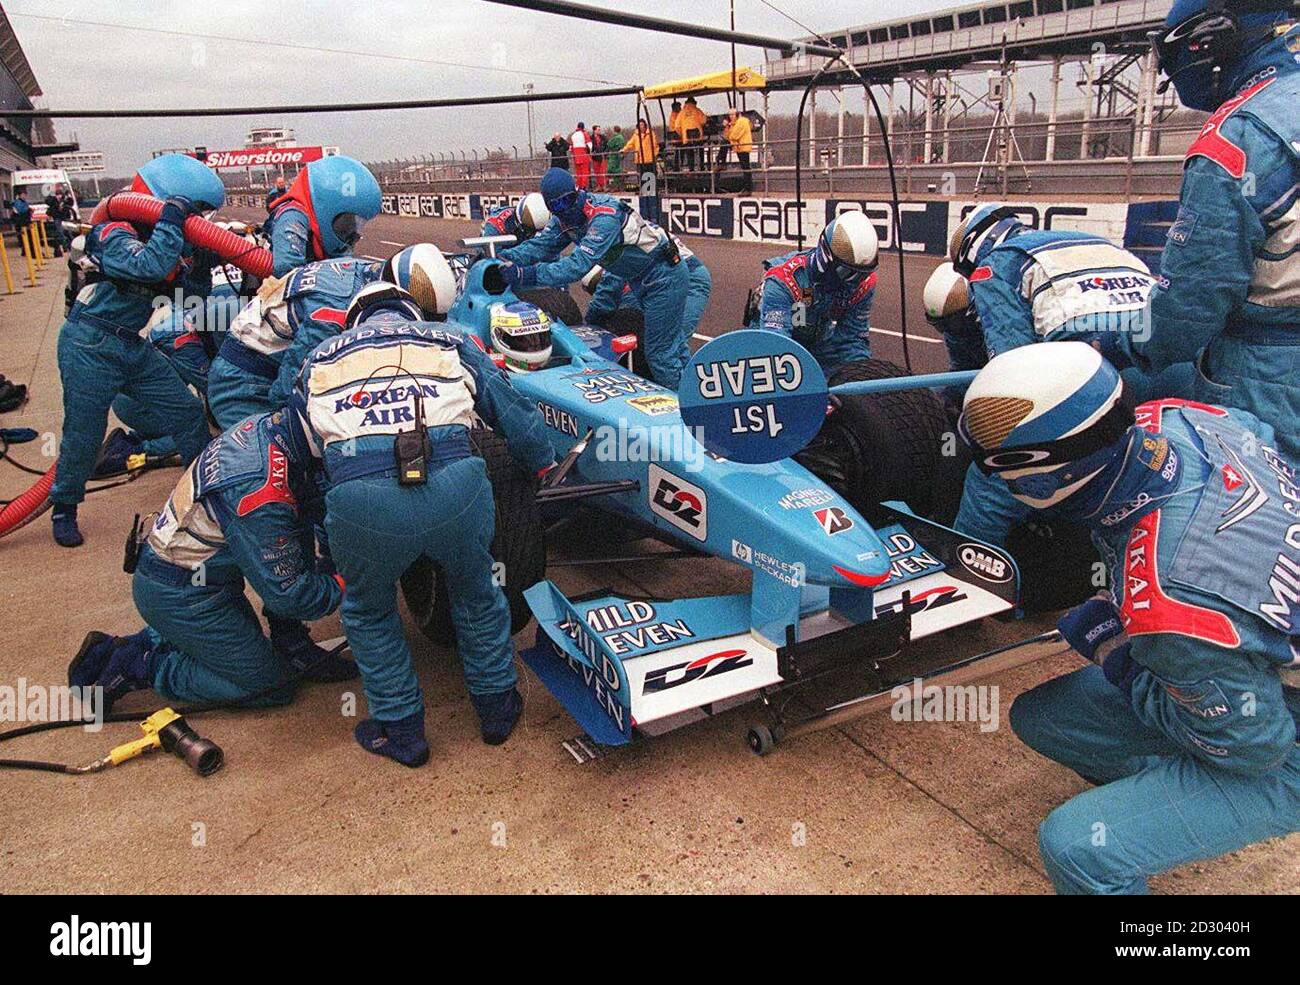 El equipo de Fórmula 1 de Benetton agudiza su trabajo en boxes, durante las pruebas en Silverstone. Foto de stock